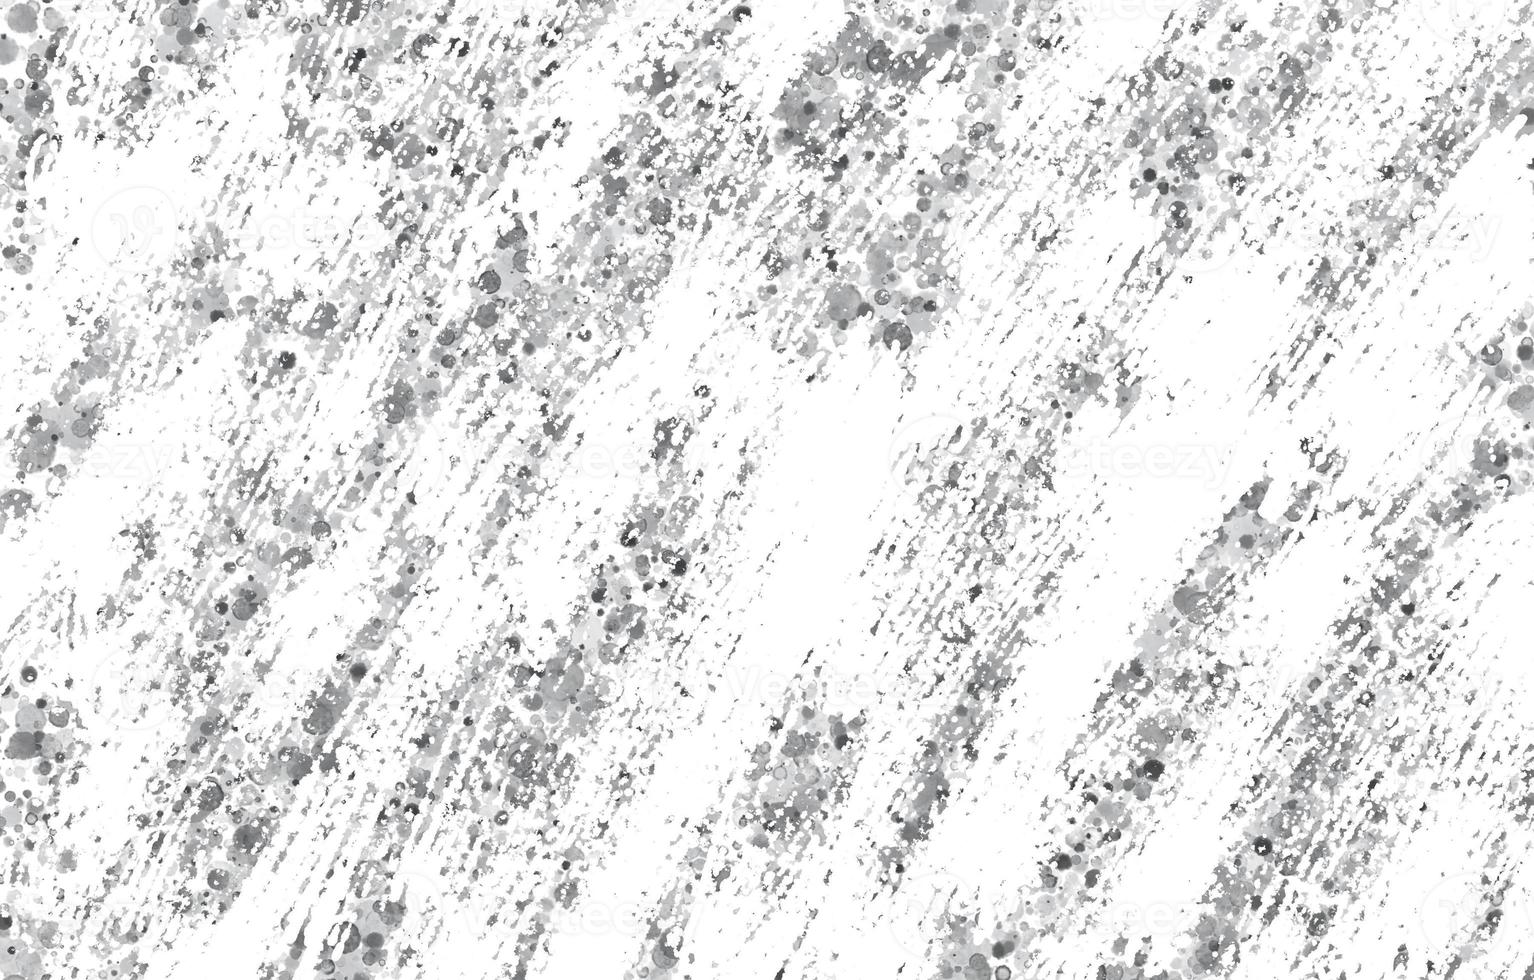 grunge blanco y negro urbano. fondo de angustia de superposición de polvo oscuro y desordenado. fácil de crear un efecto vintage punteado, rayado y abstracto con ruido y grano foto